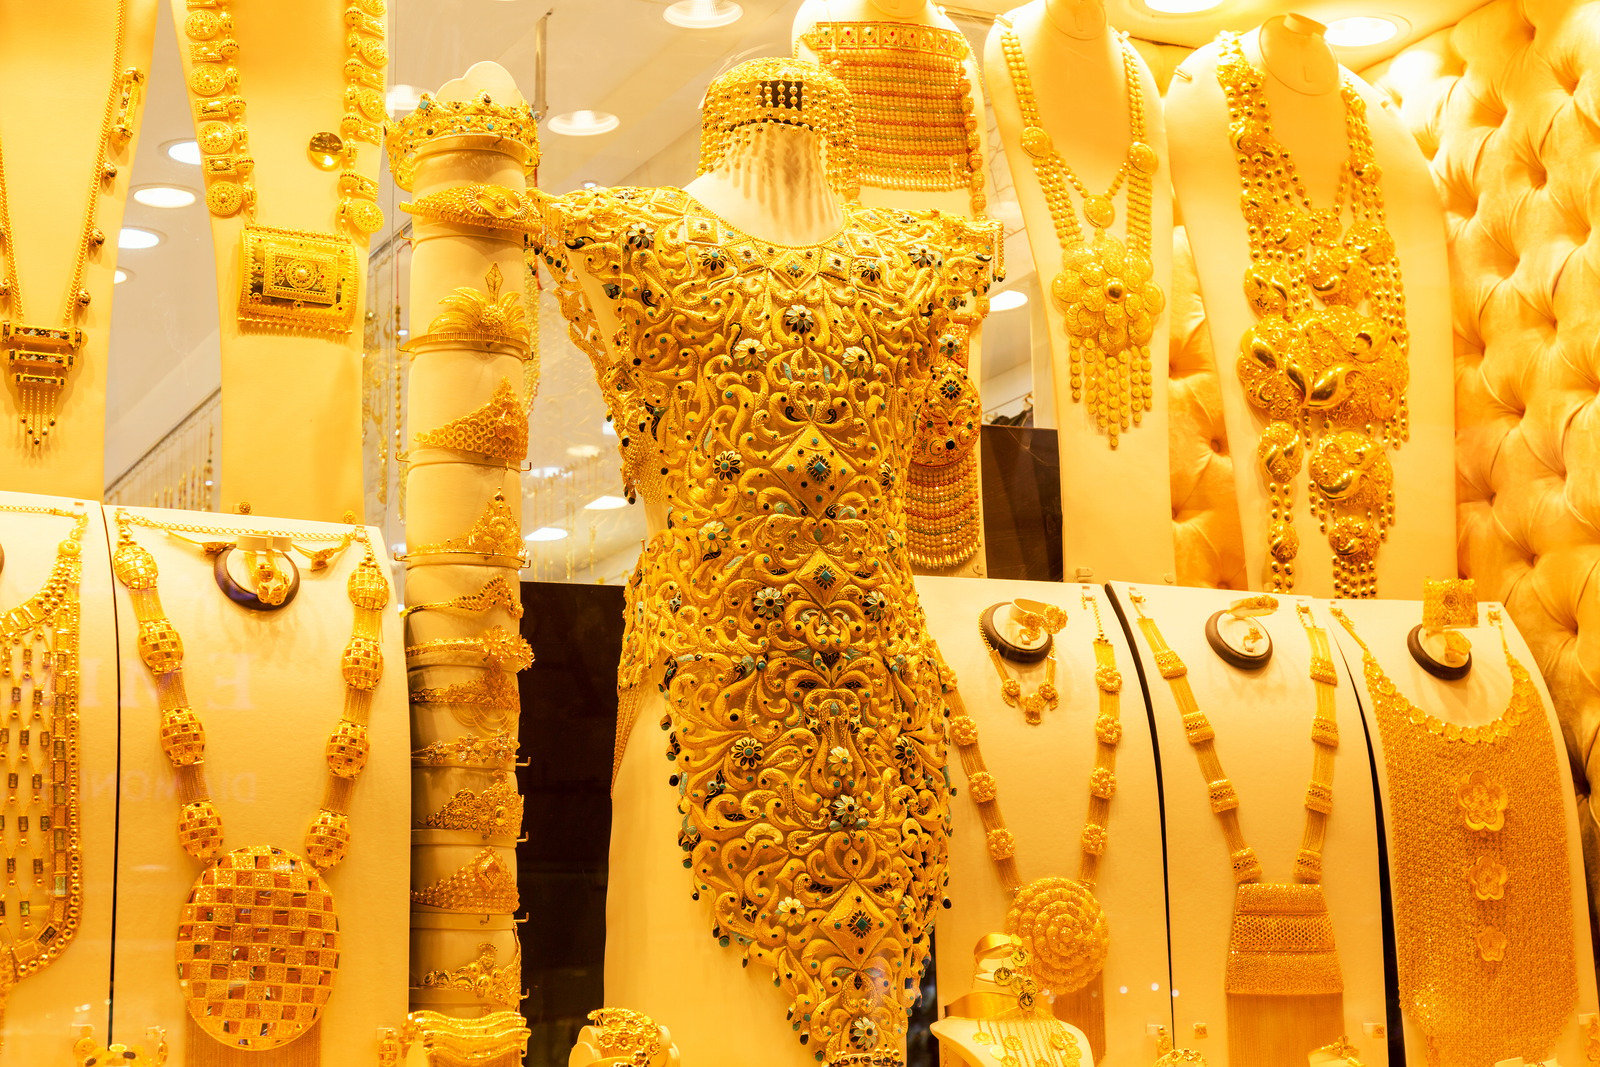 Ở Gold Souk, ngoài nữ trang, du khách có thể dễ dàng tìm thấy quần áo, giày dép, phụ kiện,... làm hoàn toàn bằng vàng